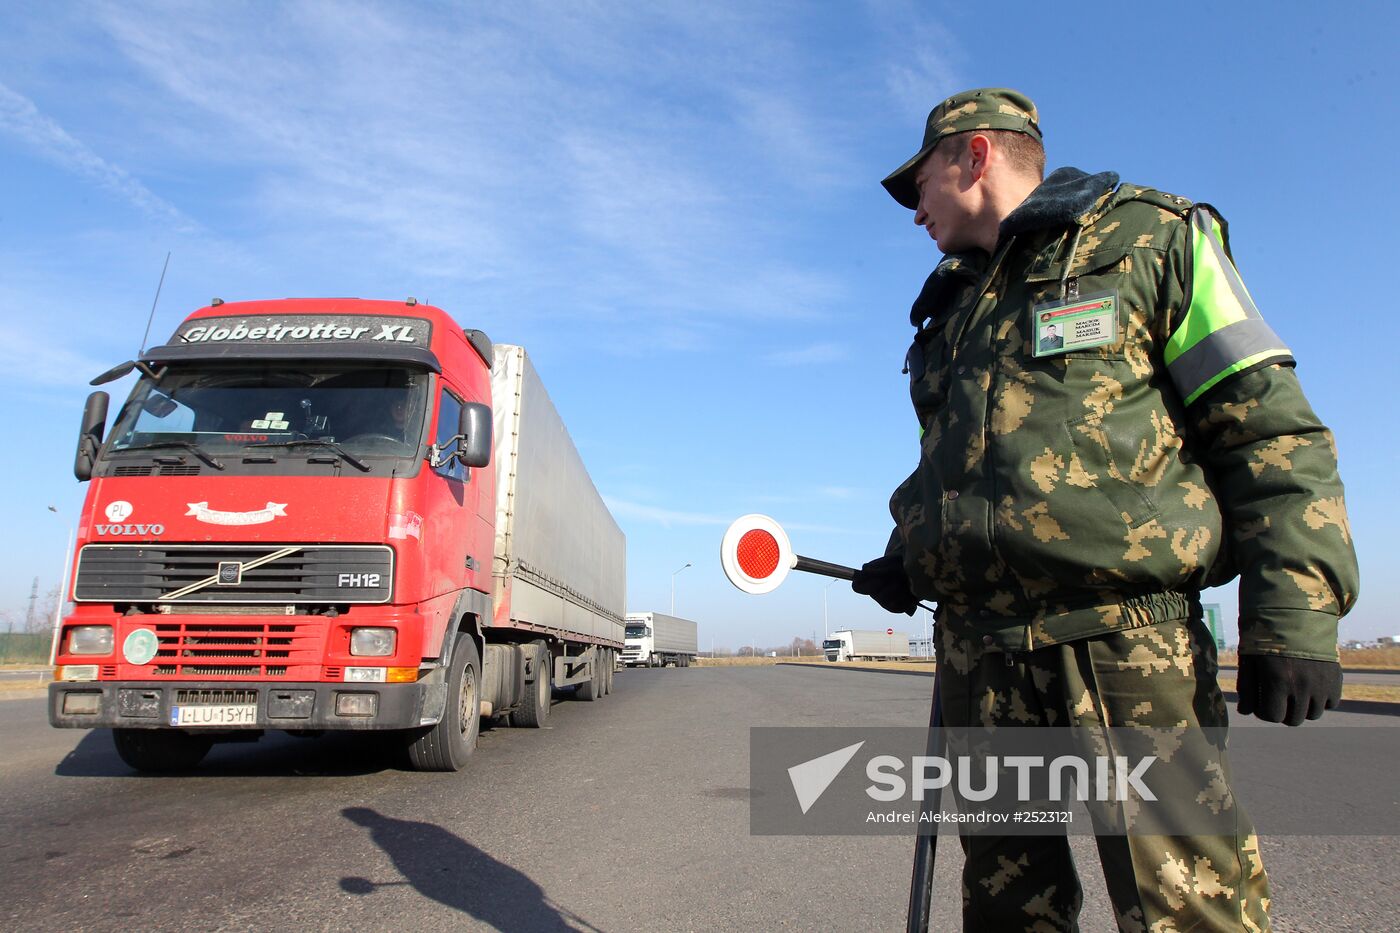 Belarusian customs at work